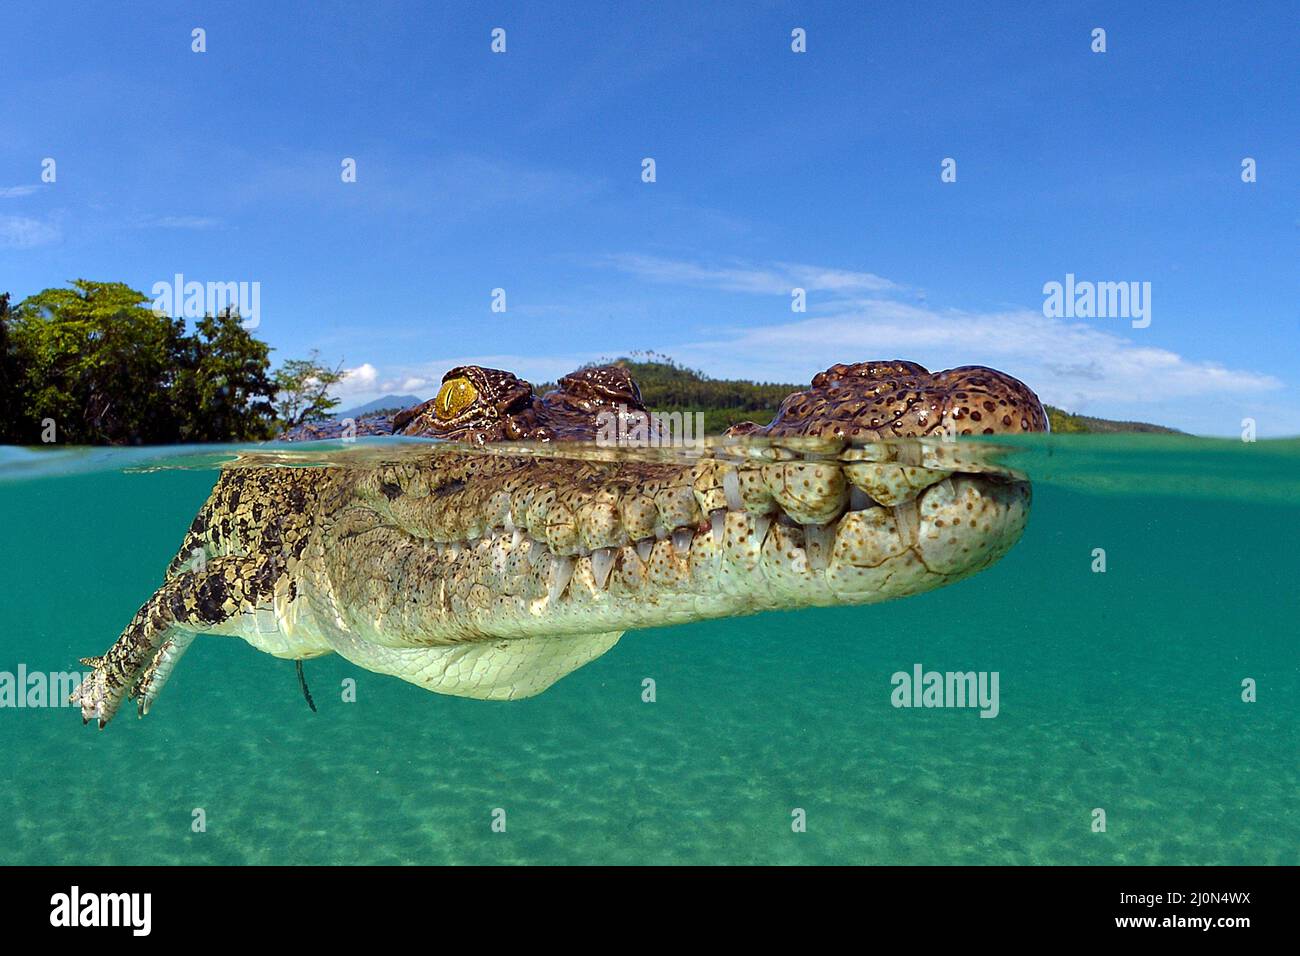 Coccodrillo di acqua salata (Crocodylus porosus), il più grande di tutti i viventi rettili, split image, Kimbe Bay, West New Britain, Papua Nuova Guinea Foto Stock